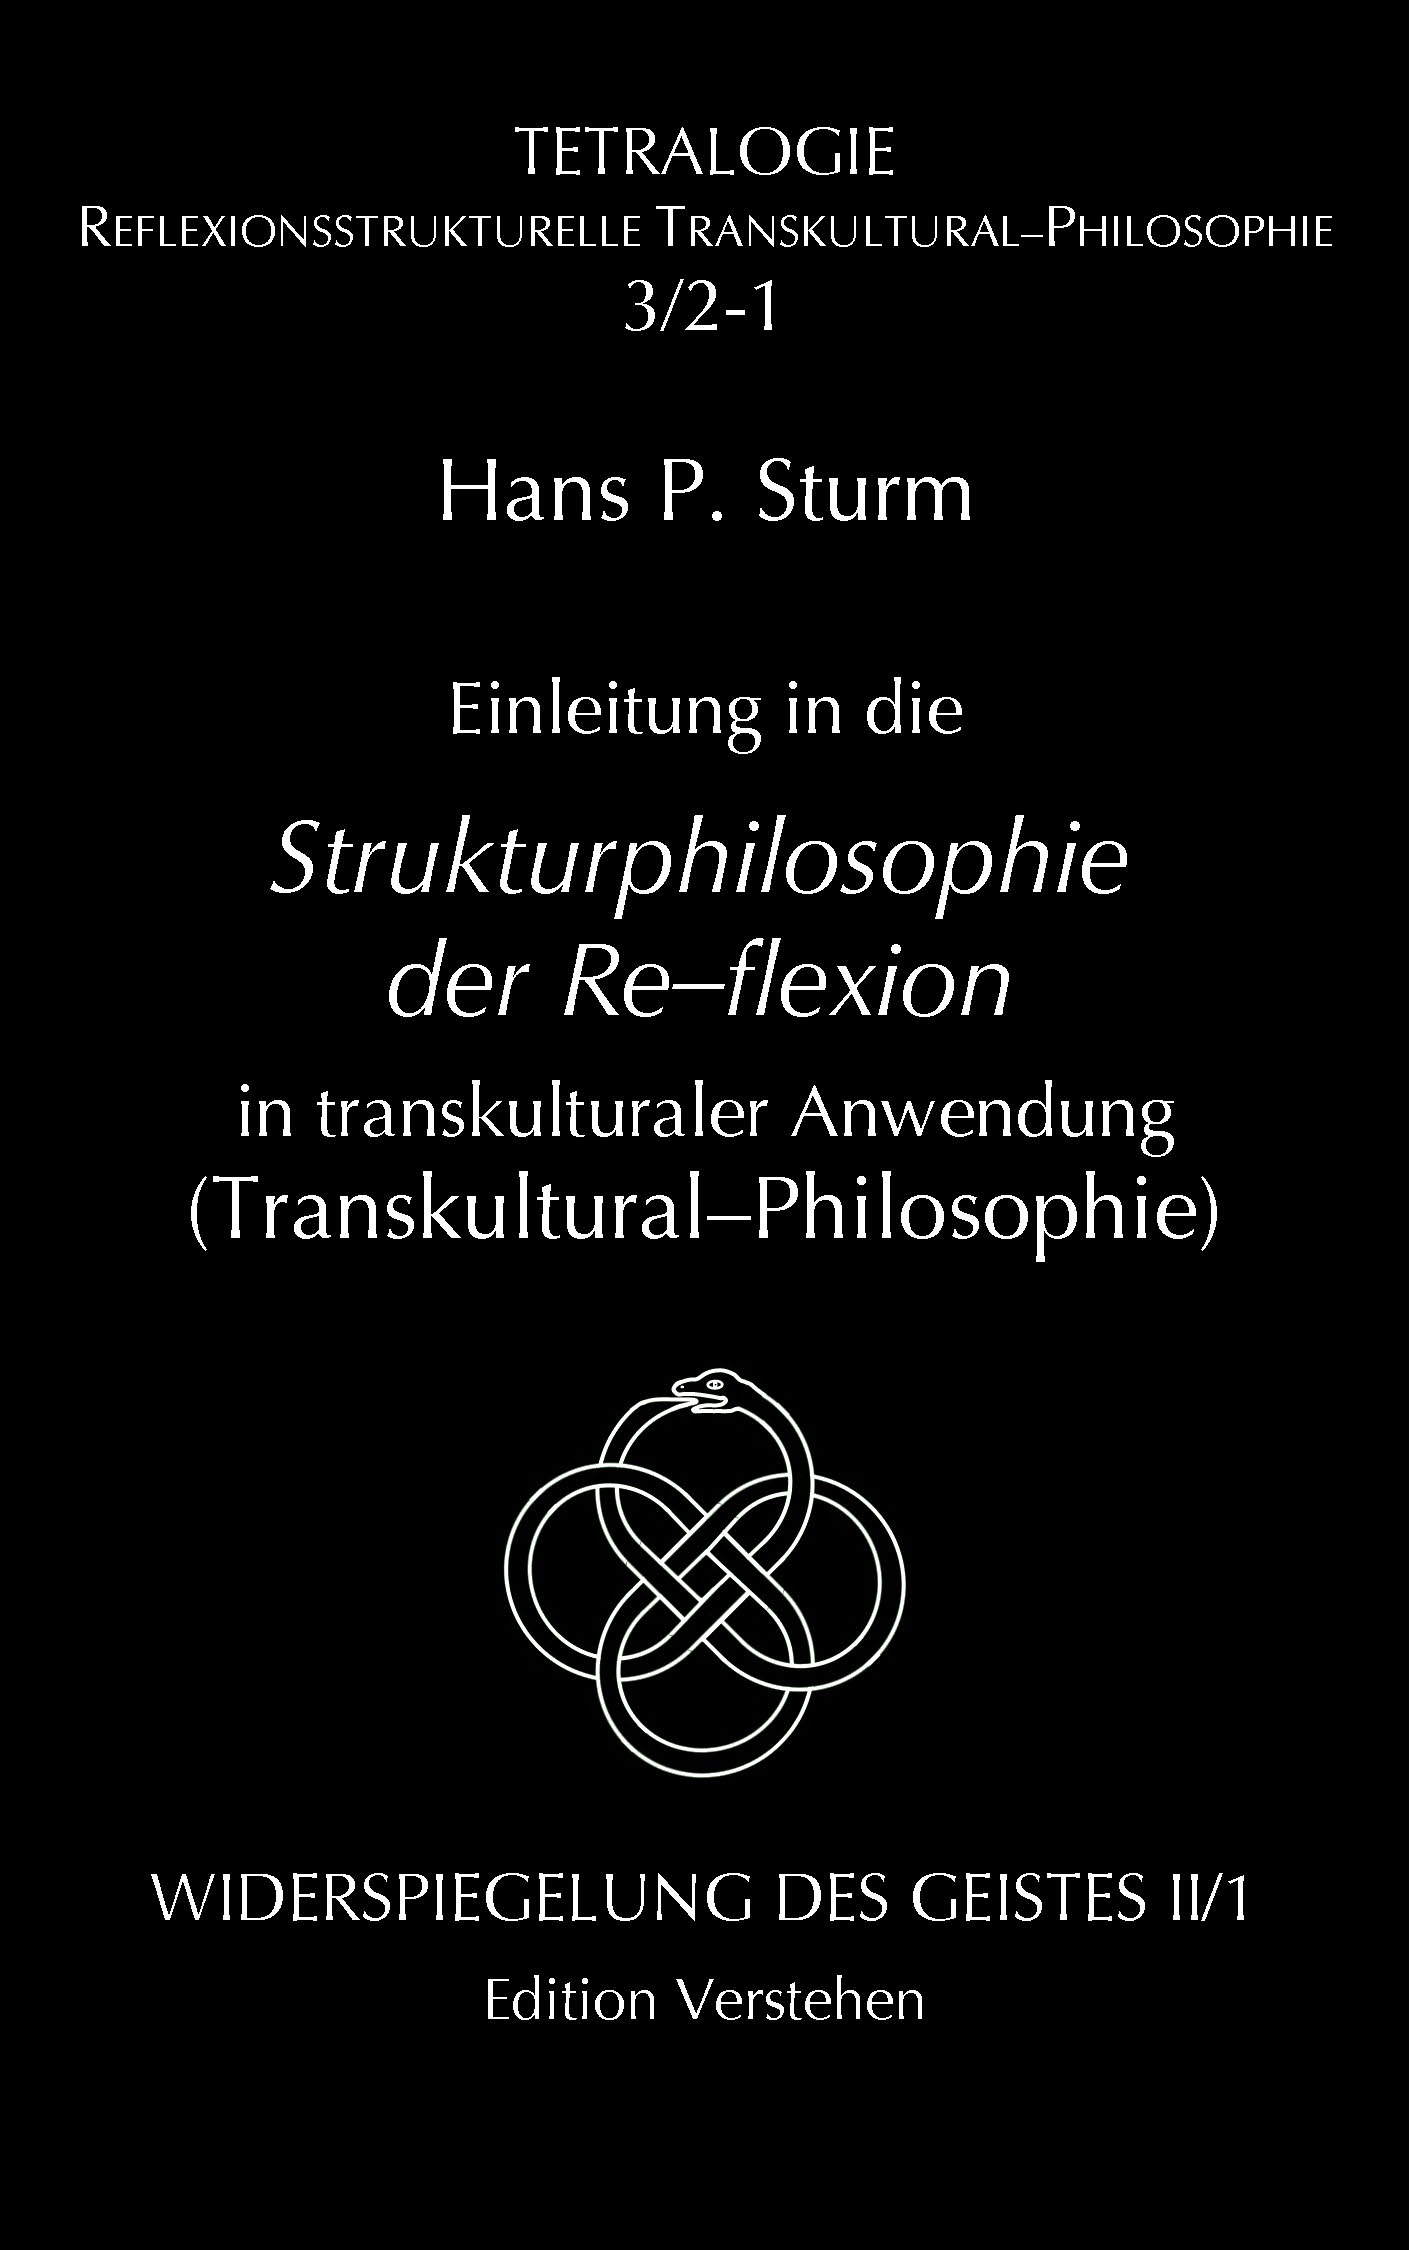 STURM-T3-2-1_Transkulturalphil.pdf